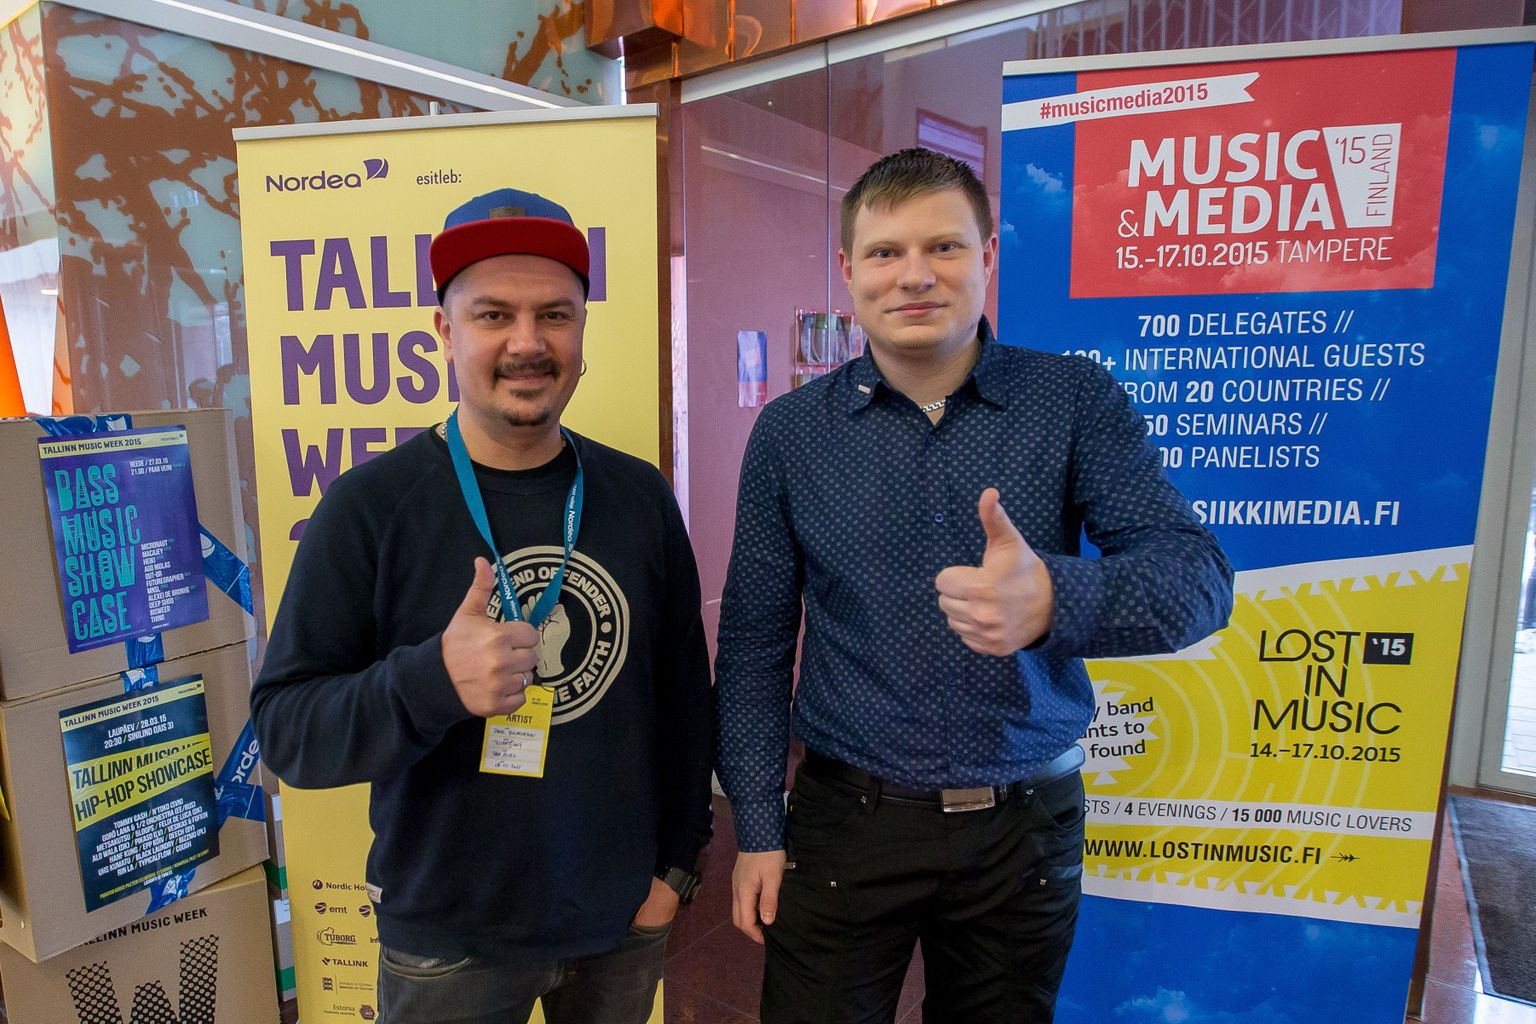 Основатель группы Trubetskoy Павел Булатников и старший редактор Limon.ee Эдгар Гергель. Снимок иллюстративный.